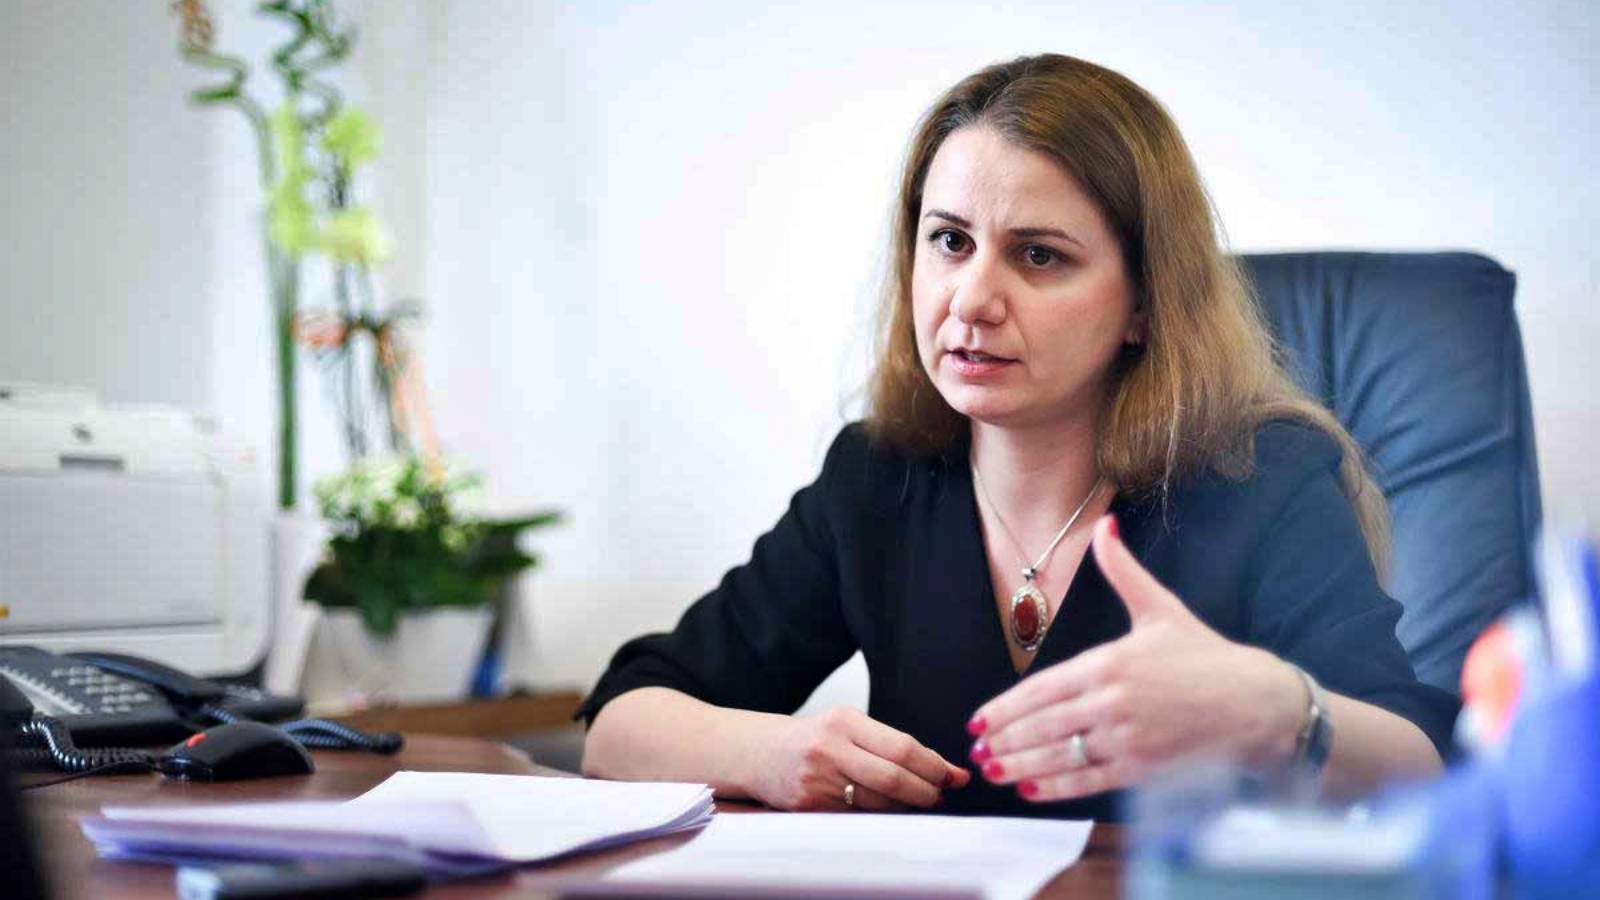 Ministrul Educatiei ULTIM MOMENT Mesajul Oficial Masurile Luate Impactul Romania